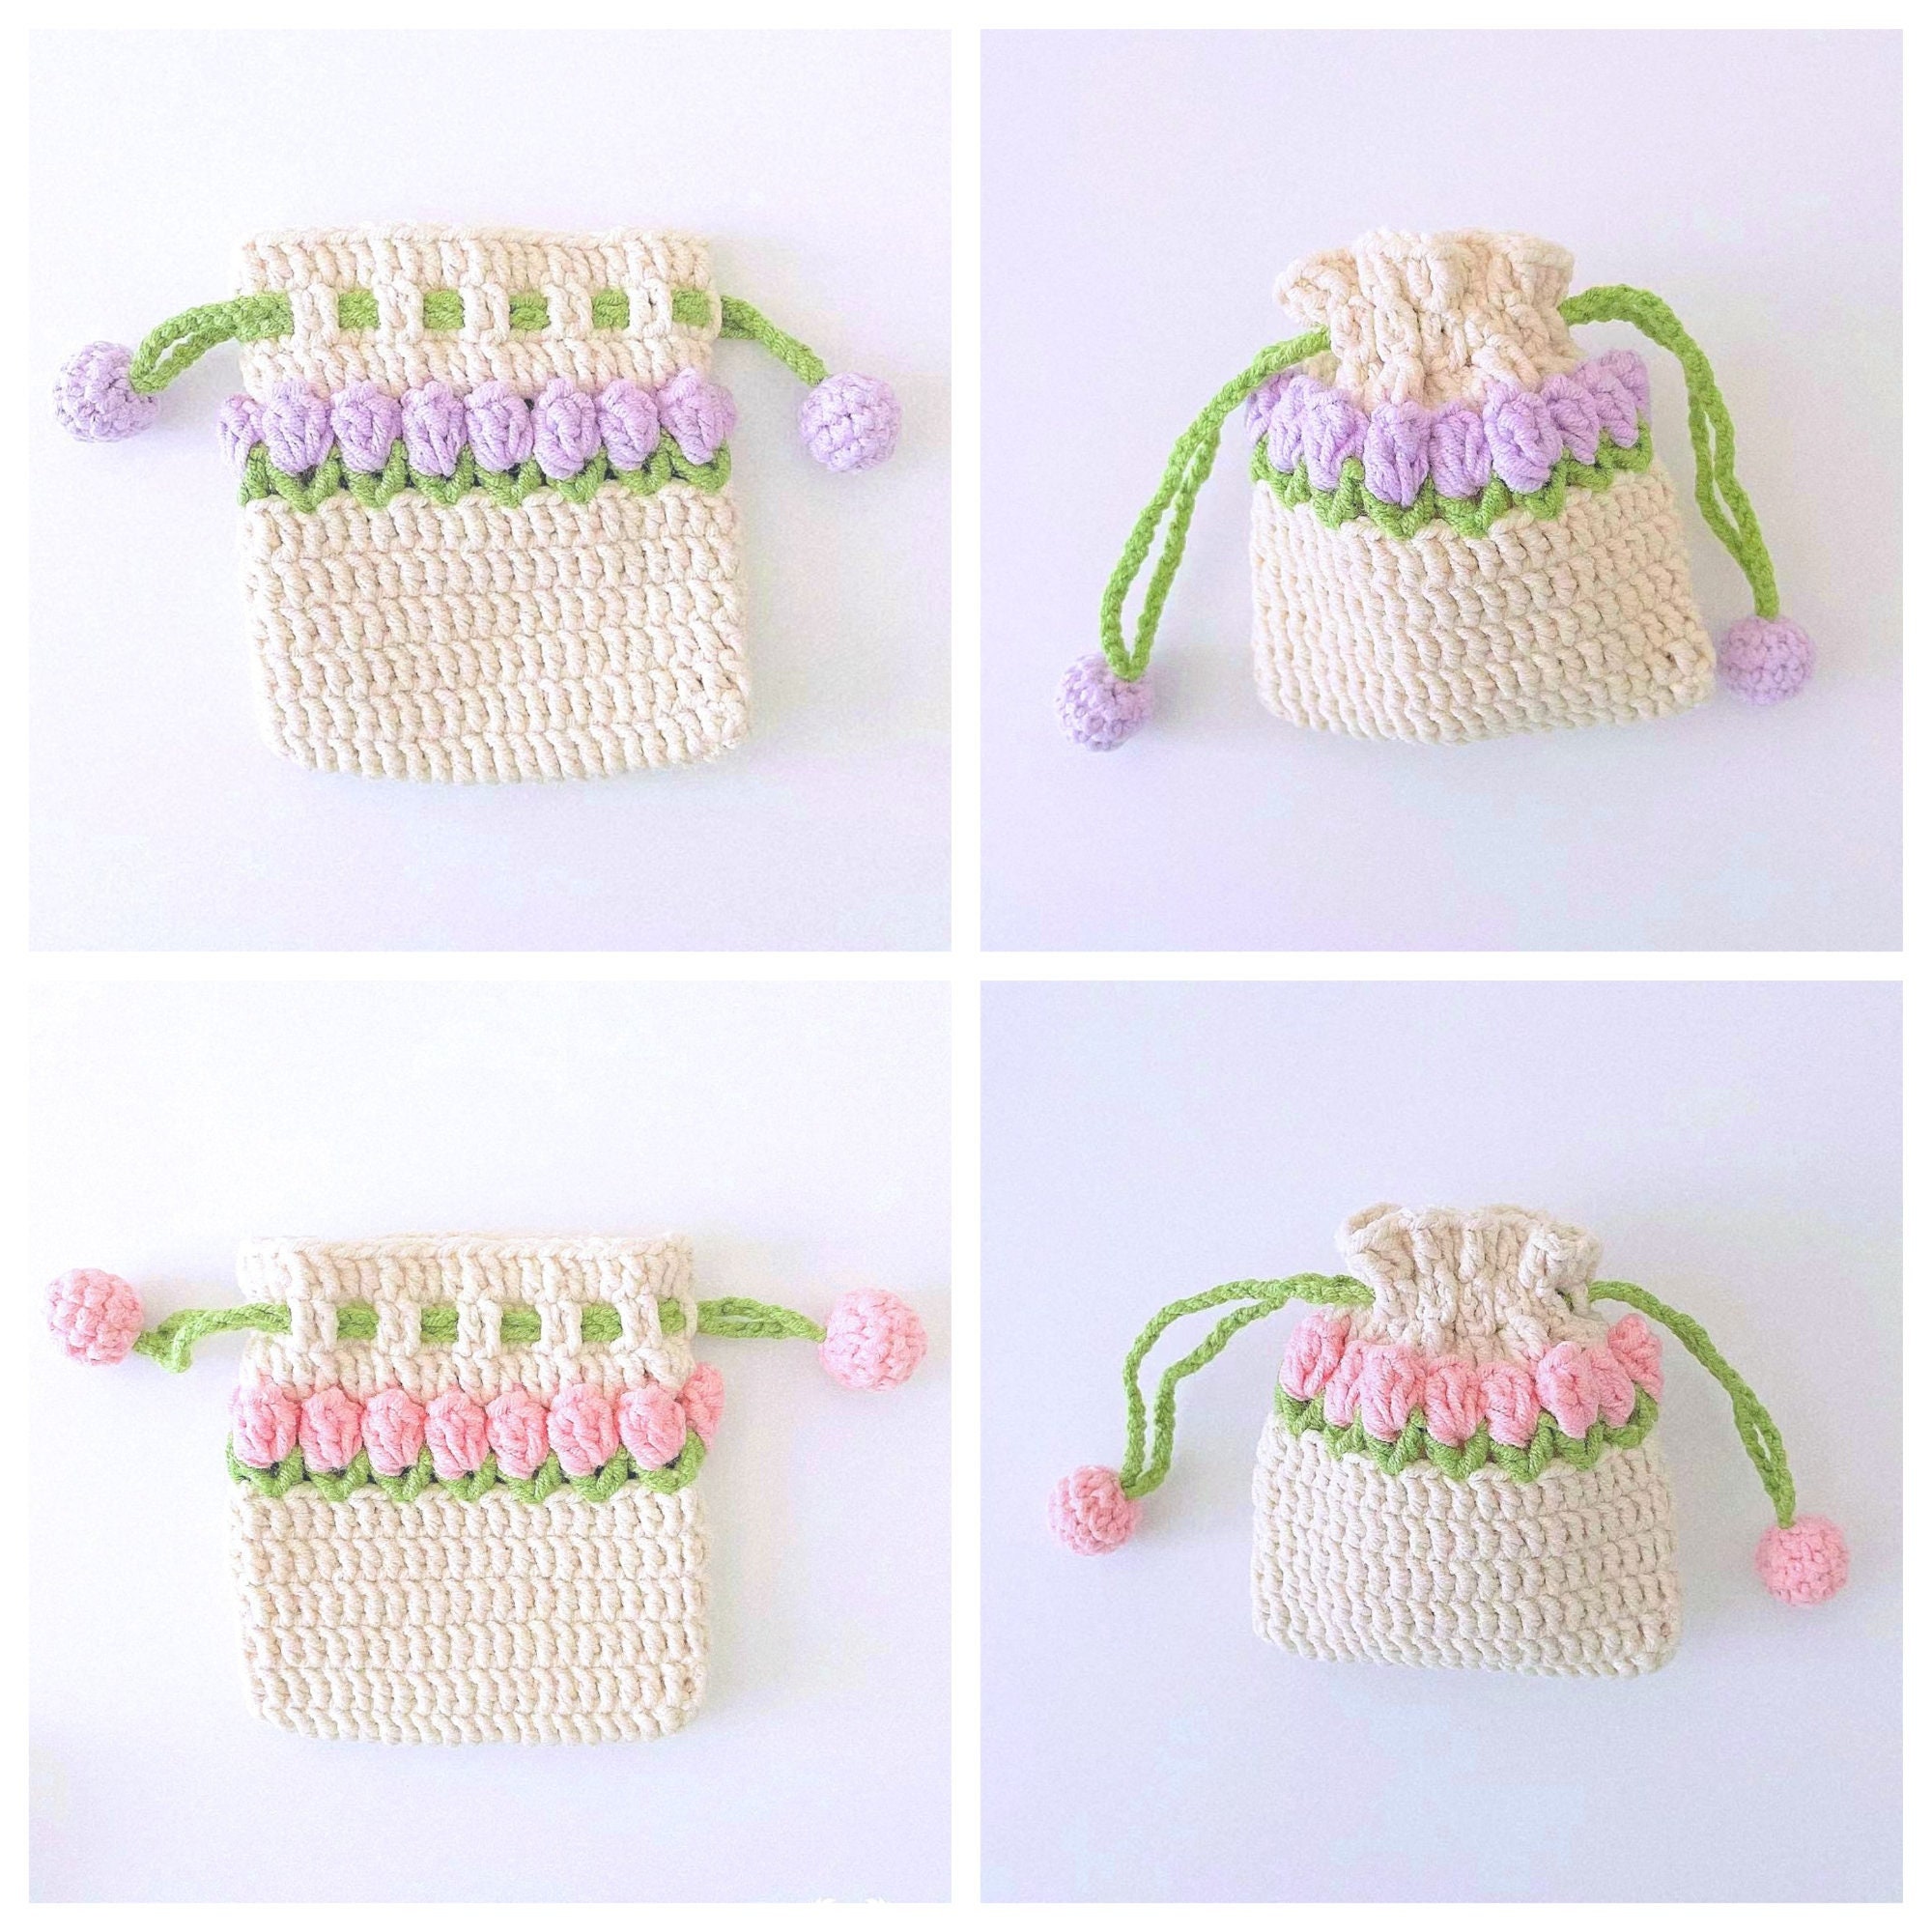  Jadeshay Crochet Hook Case Flower Pattern Lady Pouch